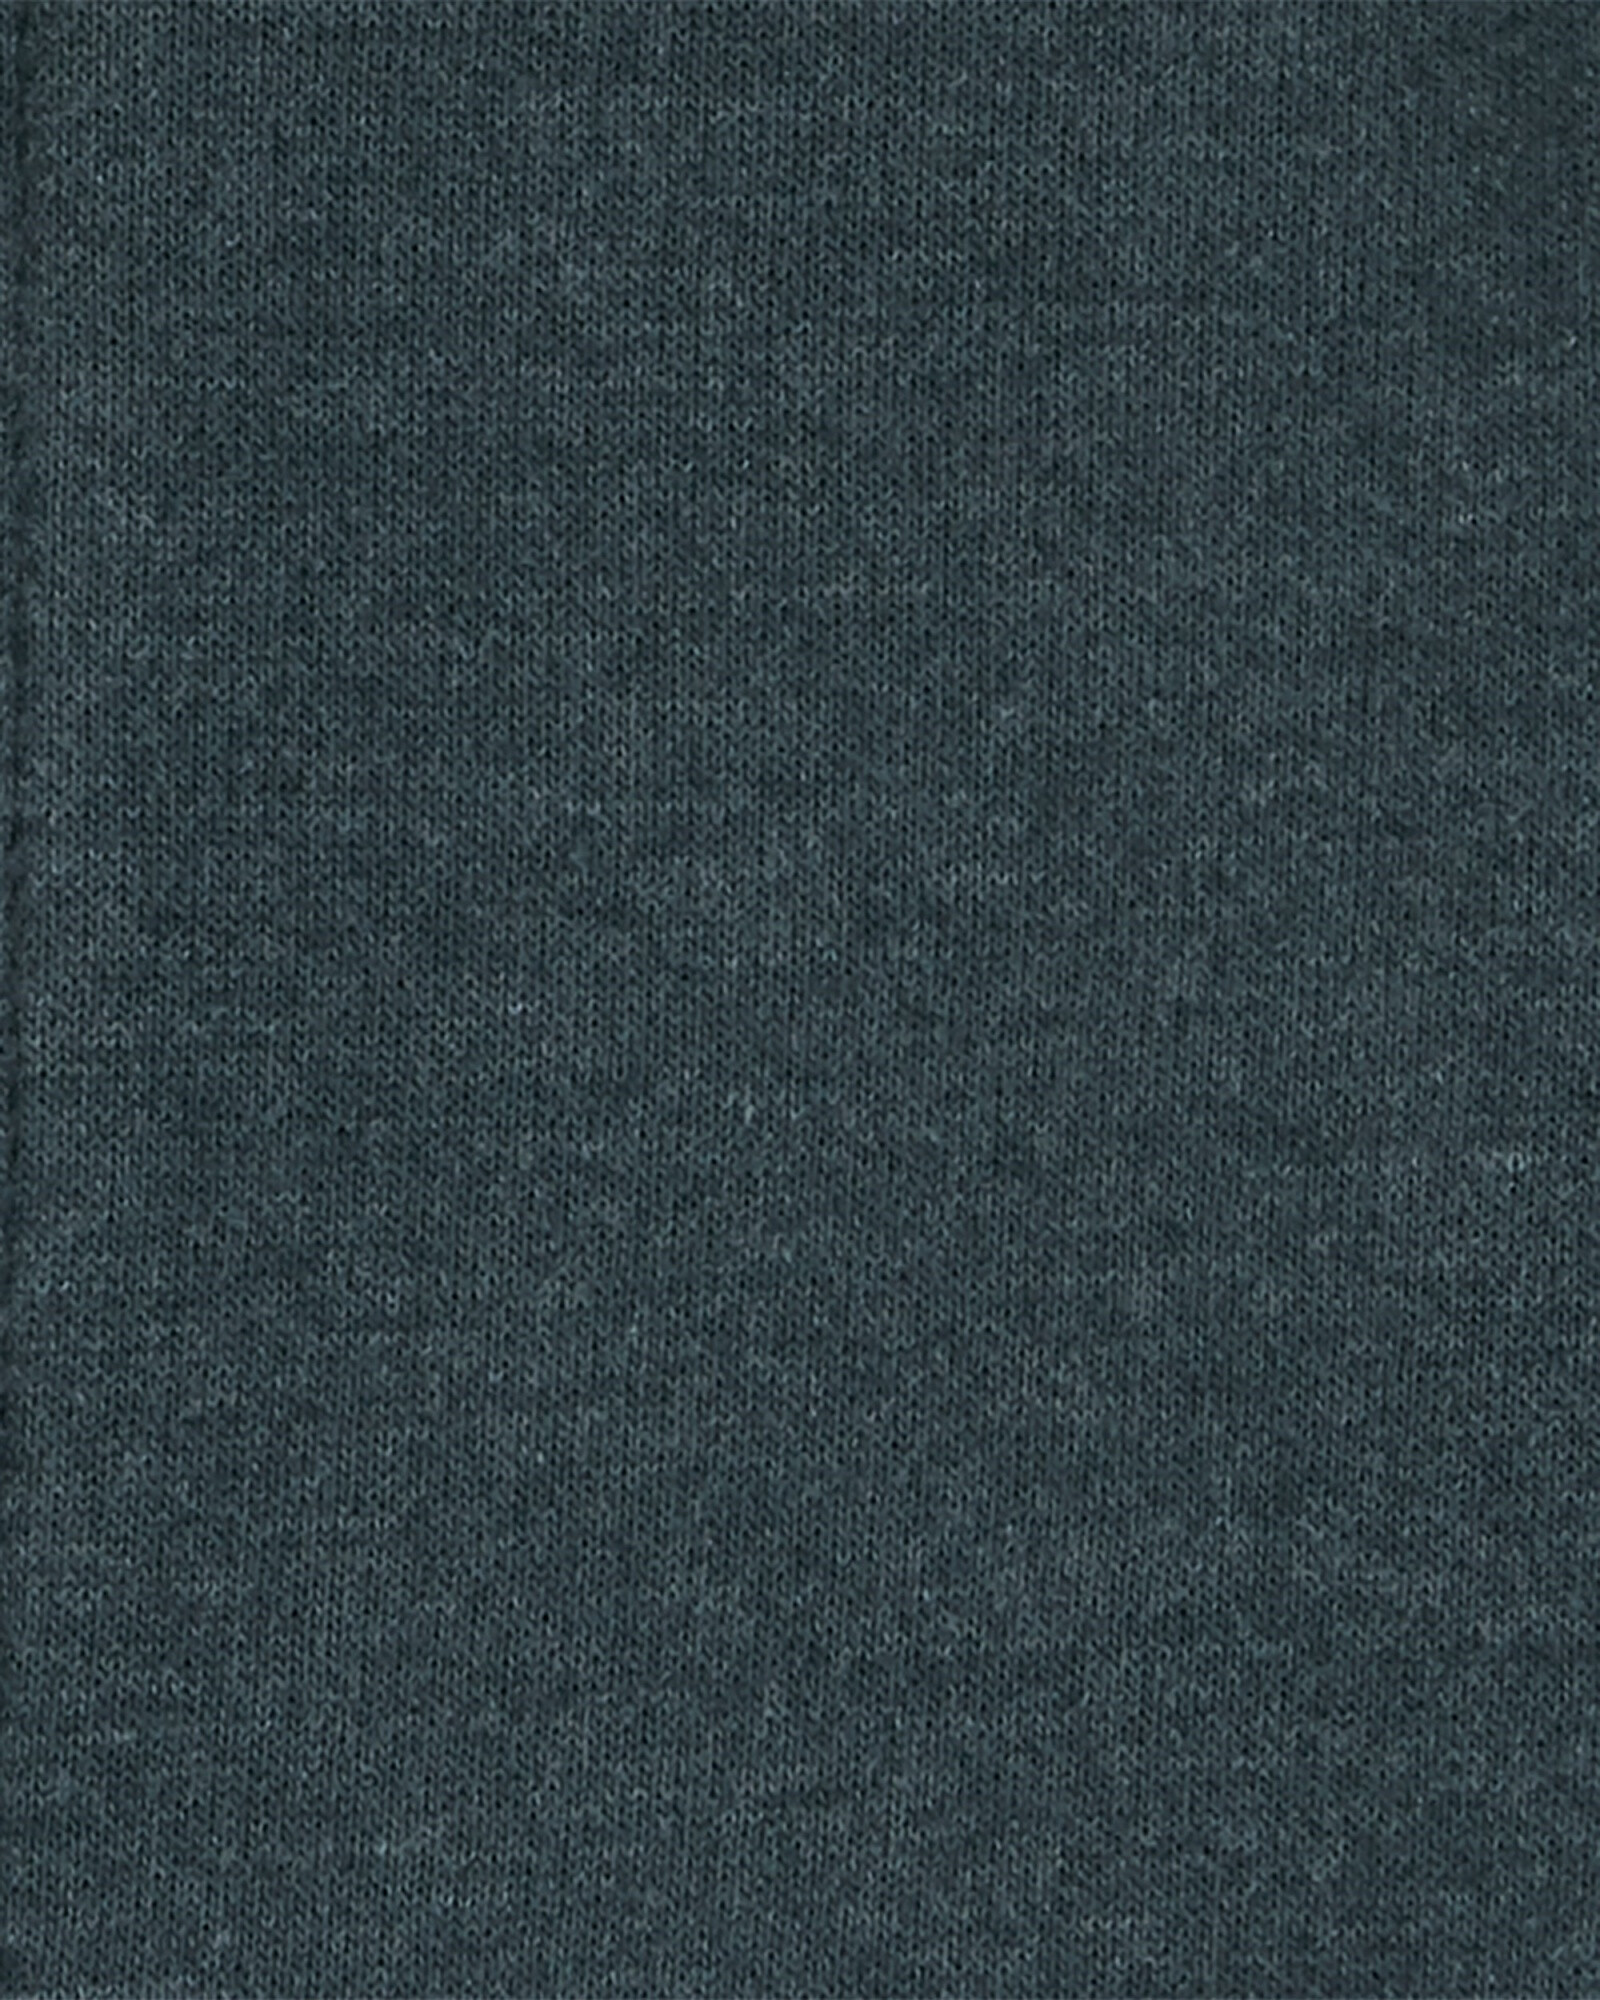 Campera de algodón, azul oscuro. Talles 0-24M Sin color